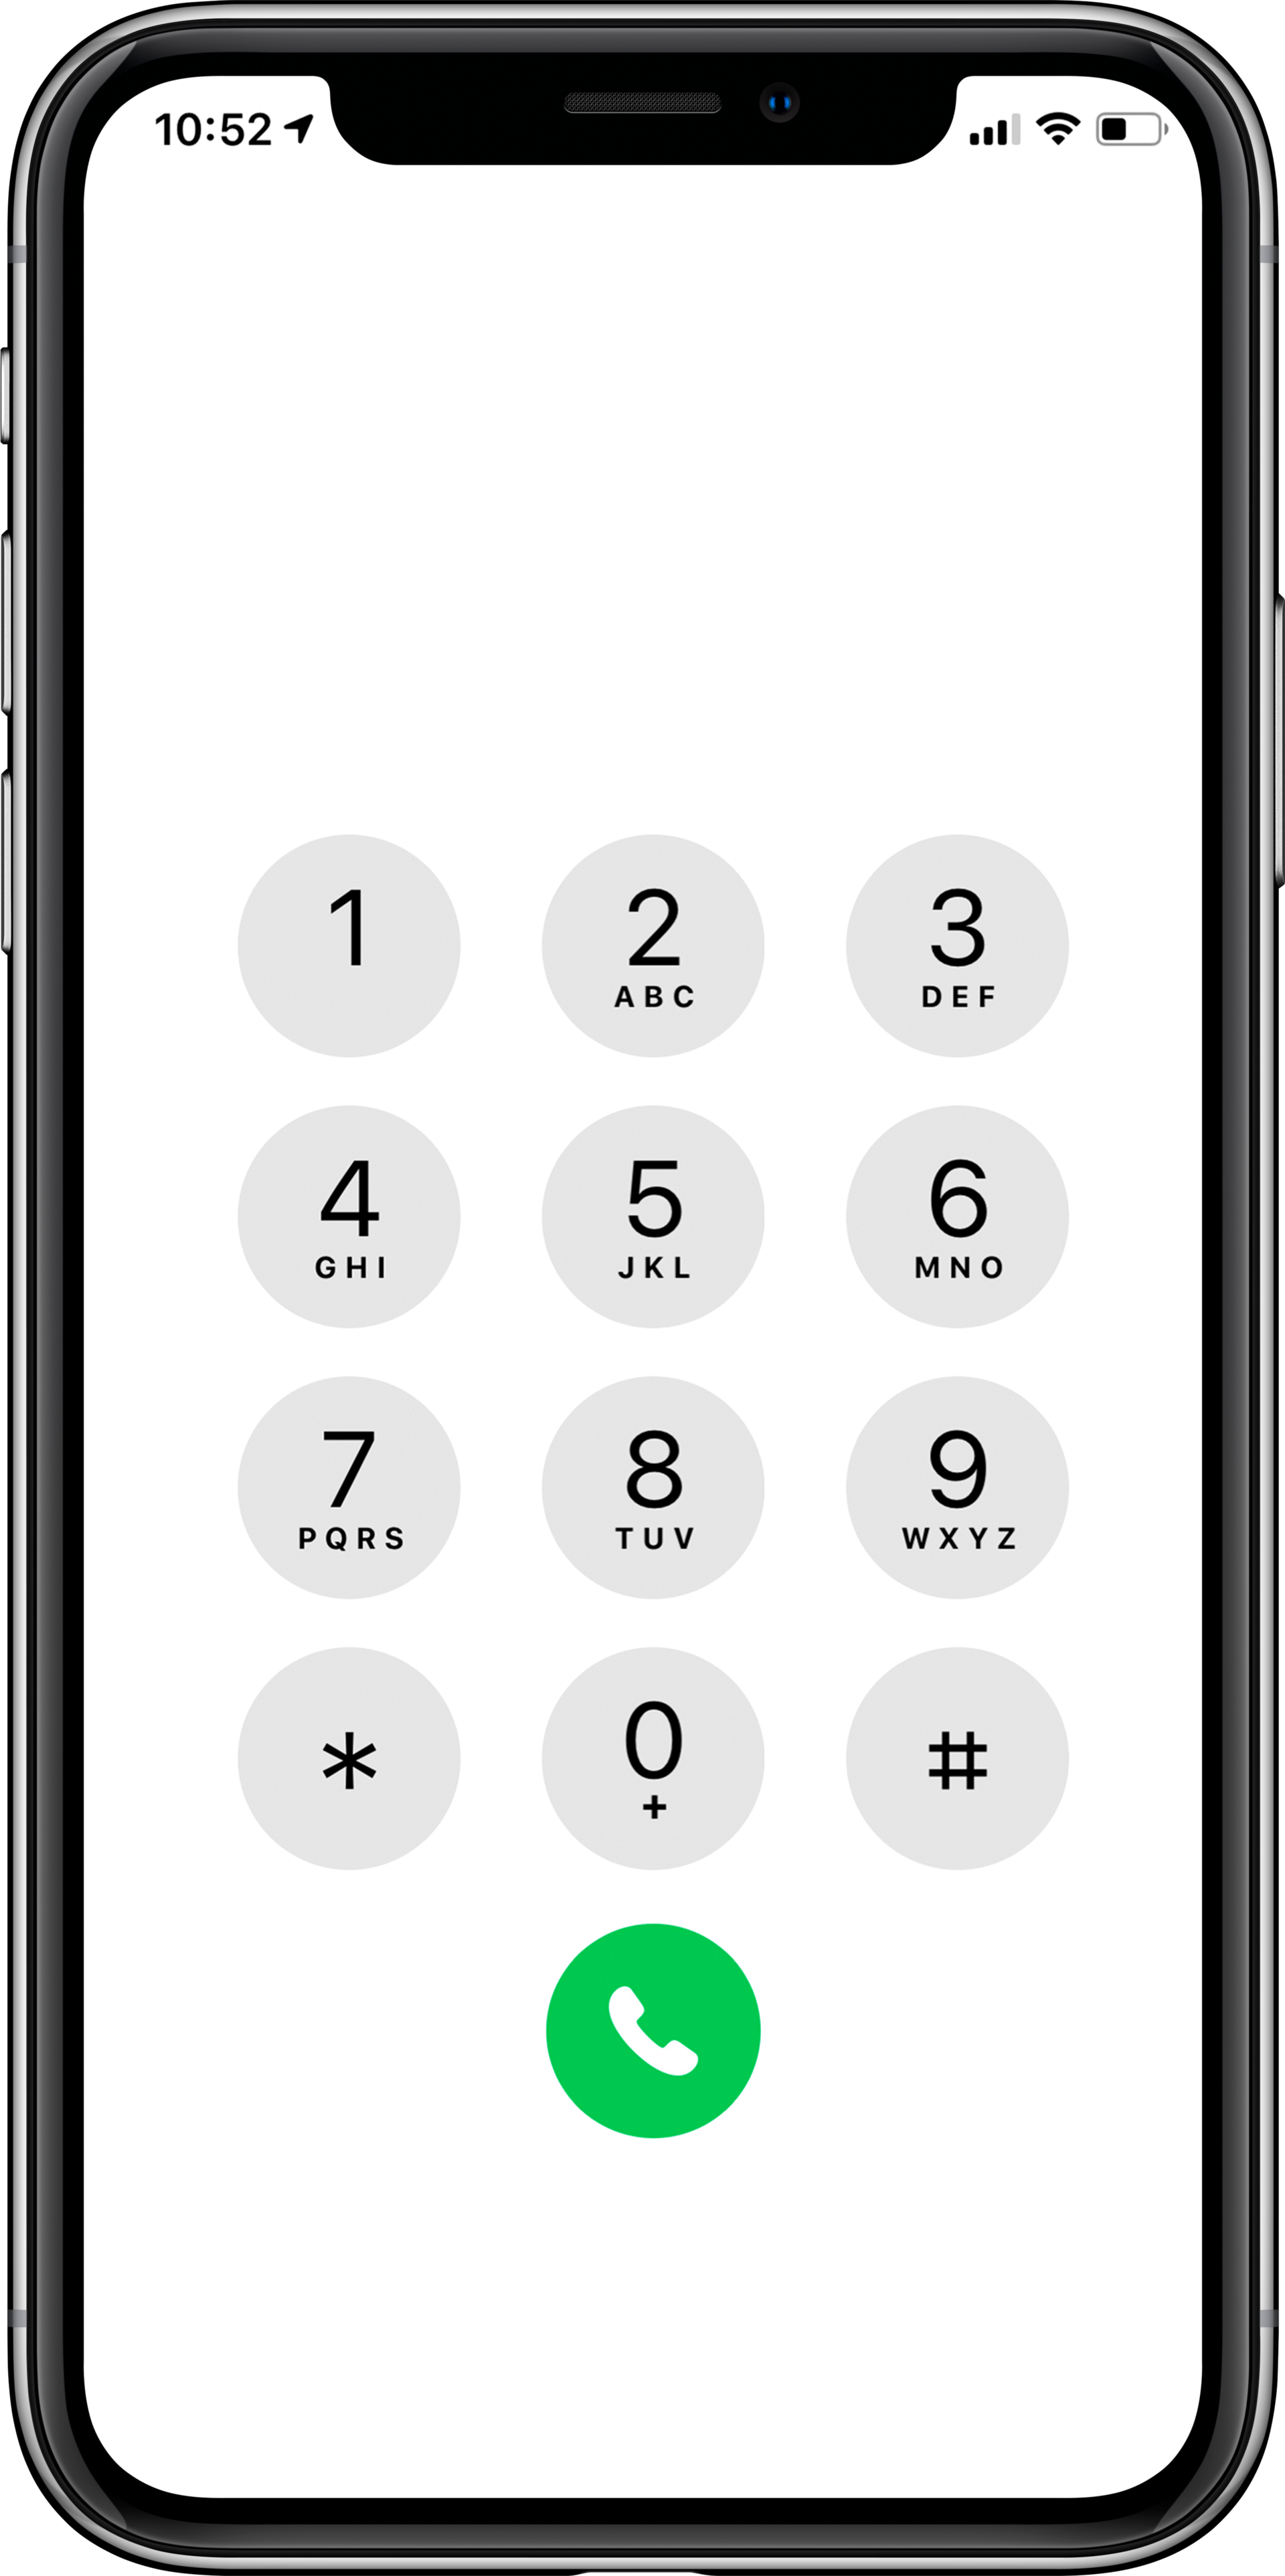 Iphone набор номера. Экран телефона набор номера. Набор номера на кнопочном телефоне. Кнопки для набора номера айфон. Экран быстрого набора